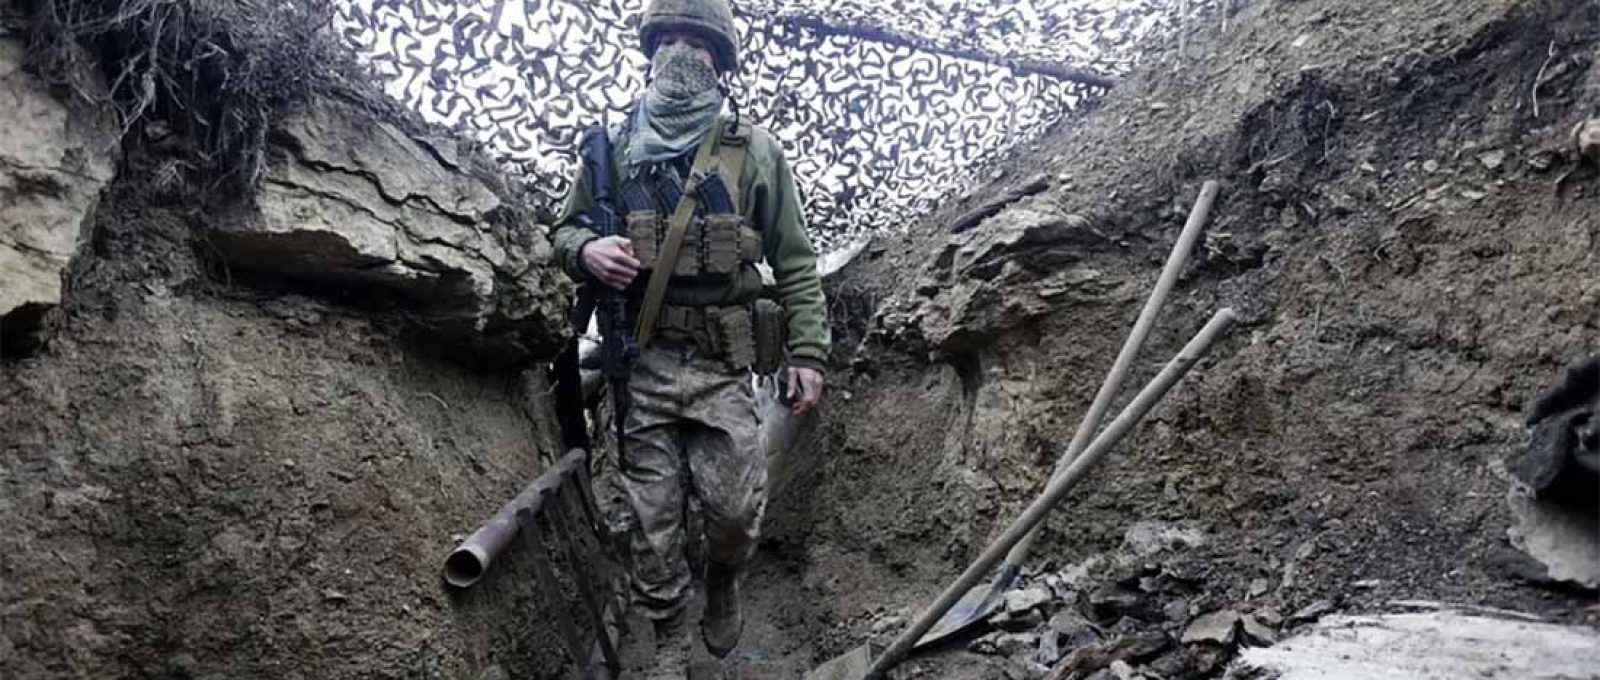 Soldado ucraniano caminha sob rede de camuflagem em uma trincheira na linha de separação de rebeldes pró-Rússia na região de Donetsk, na Ucrânia, em 3 de dezembro (Andriy Dubchak/AP).